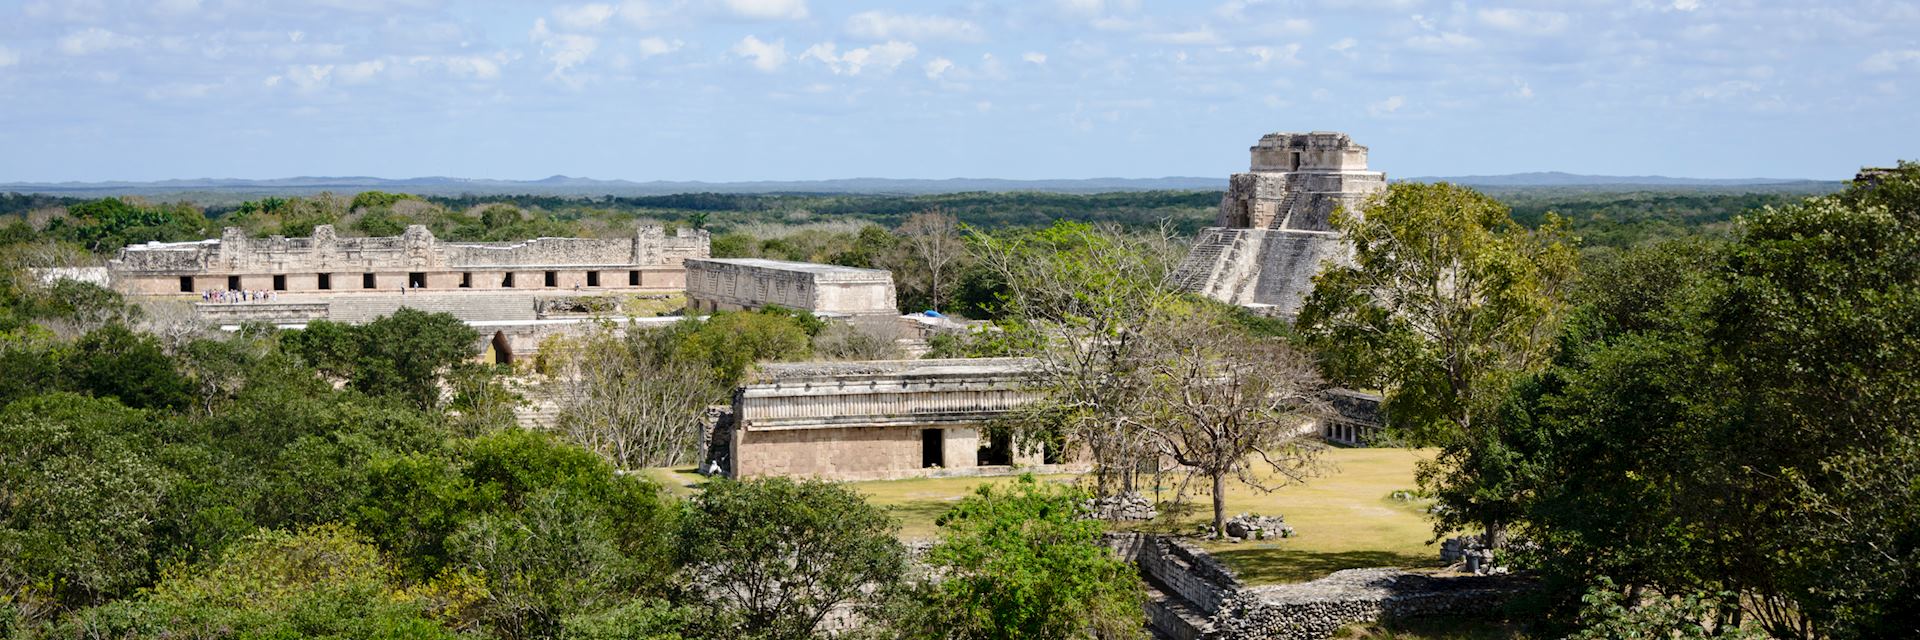 Maya ruins at Uxmal